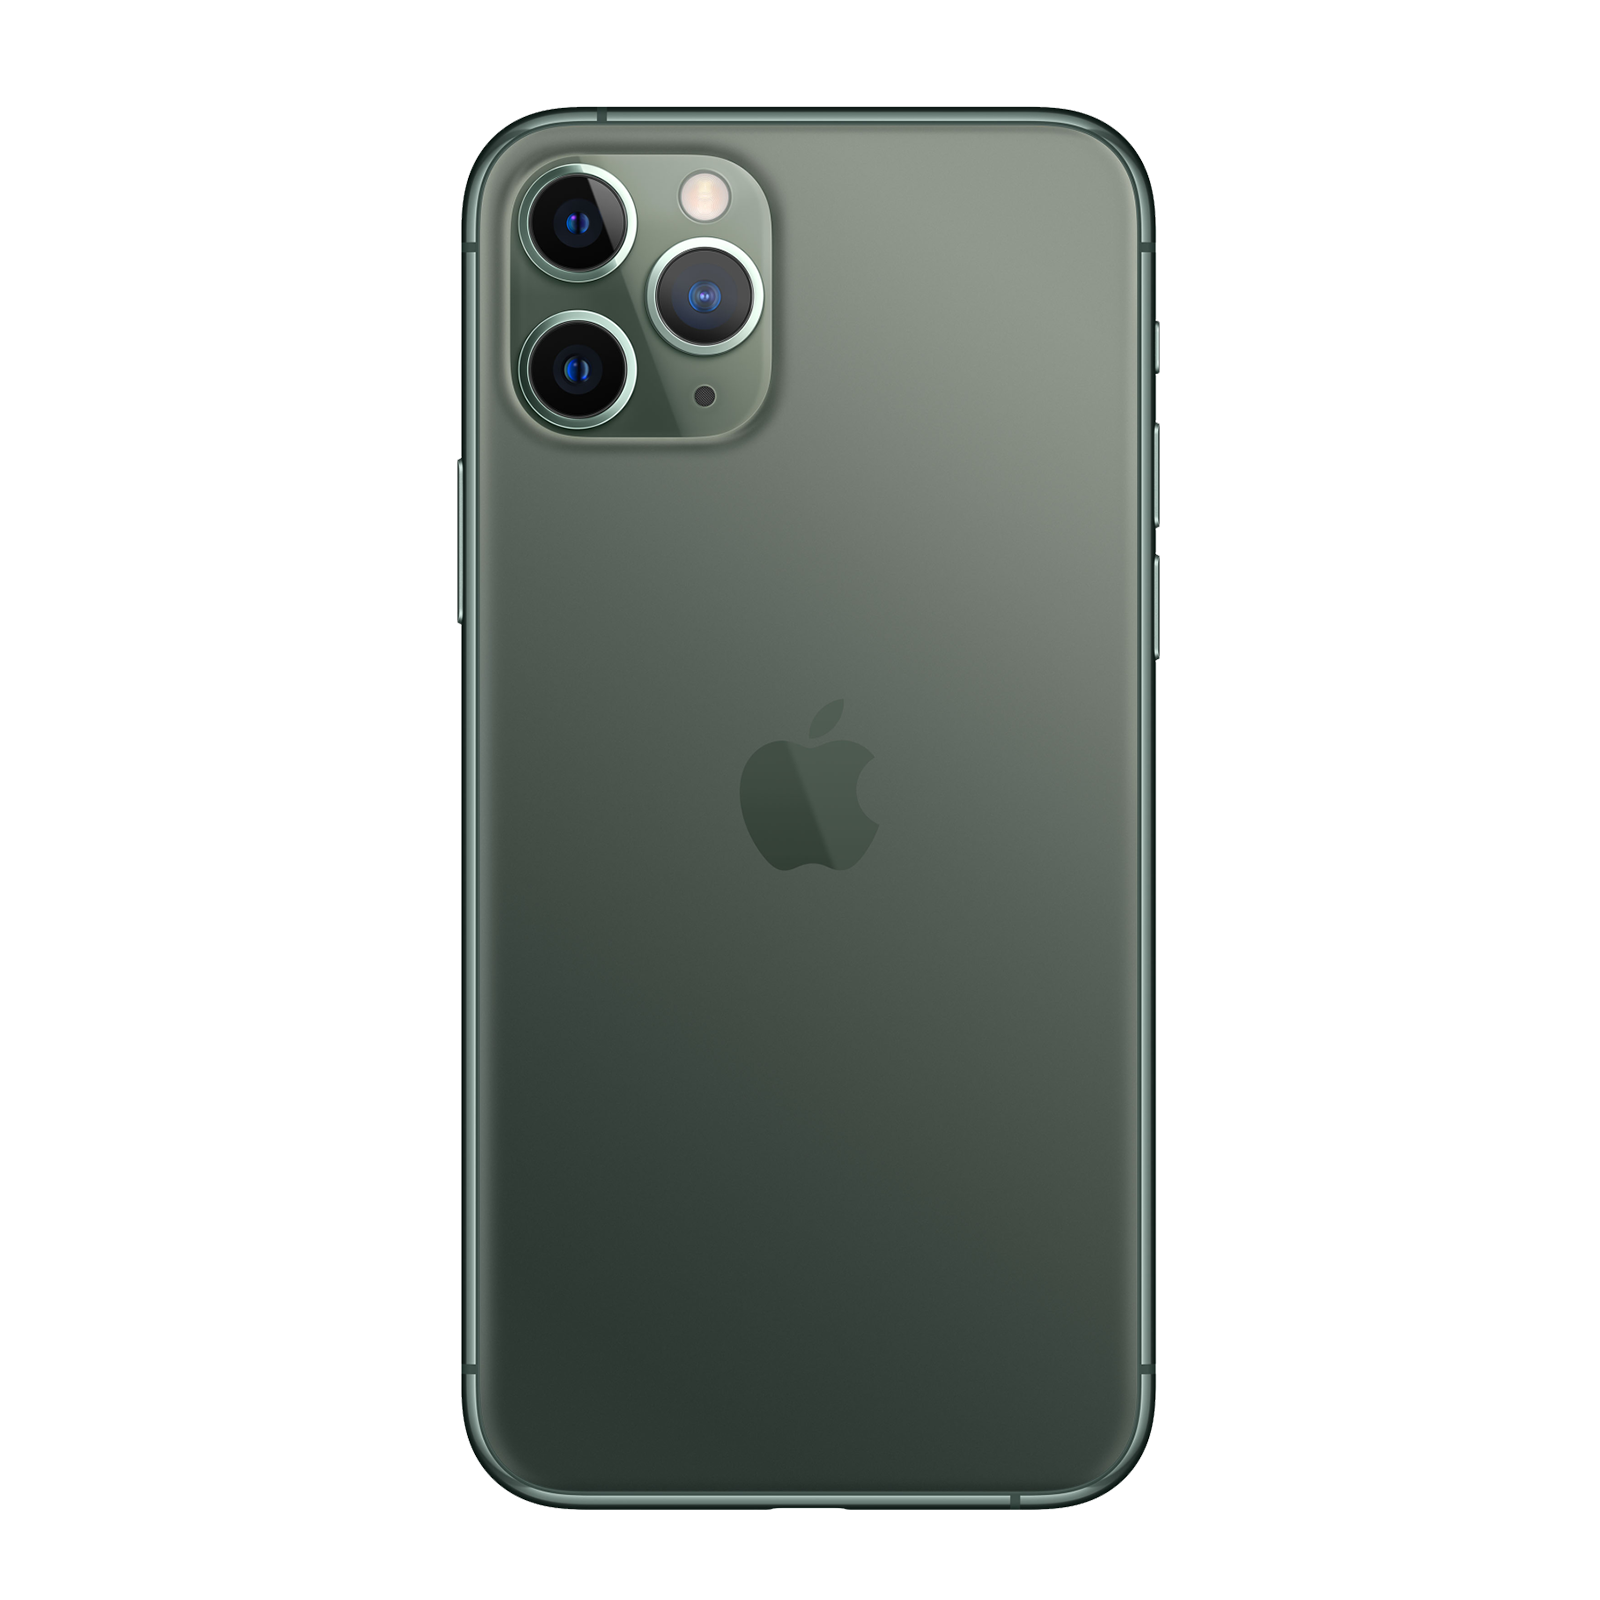 Apple iPhone 11 Pro Max 64GB Verde di mezzanotte Come Nuovo Sbloccato